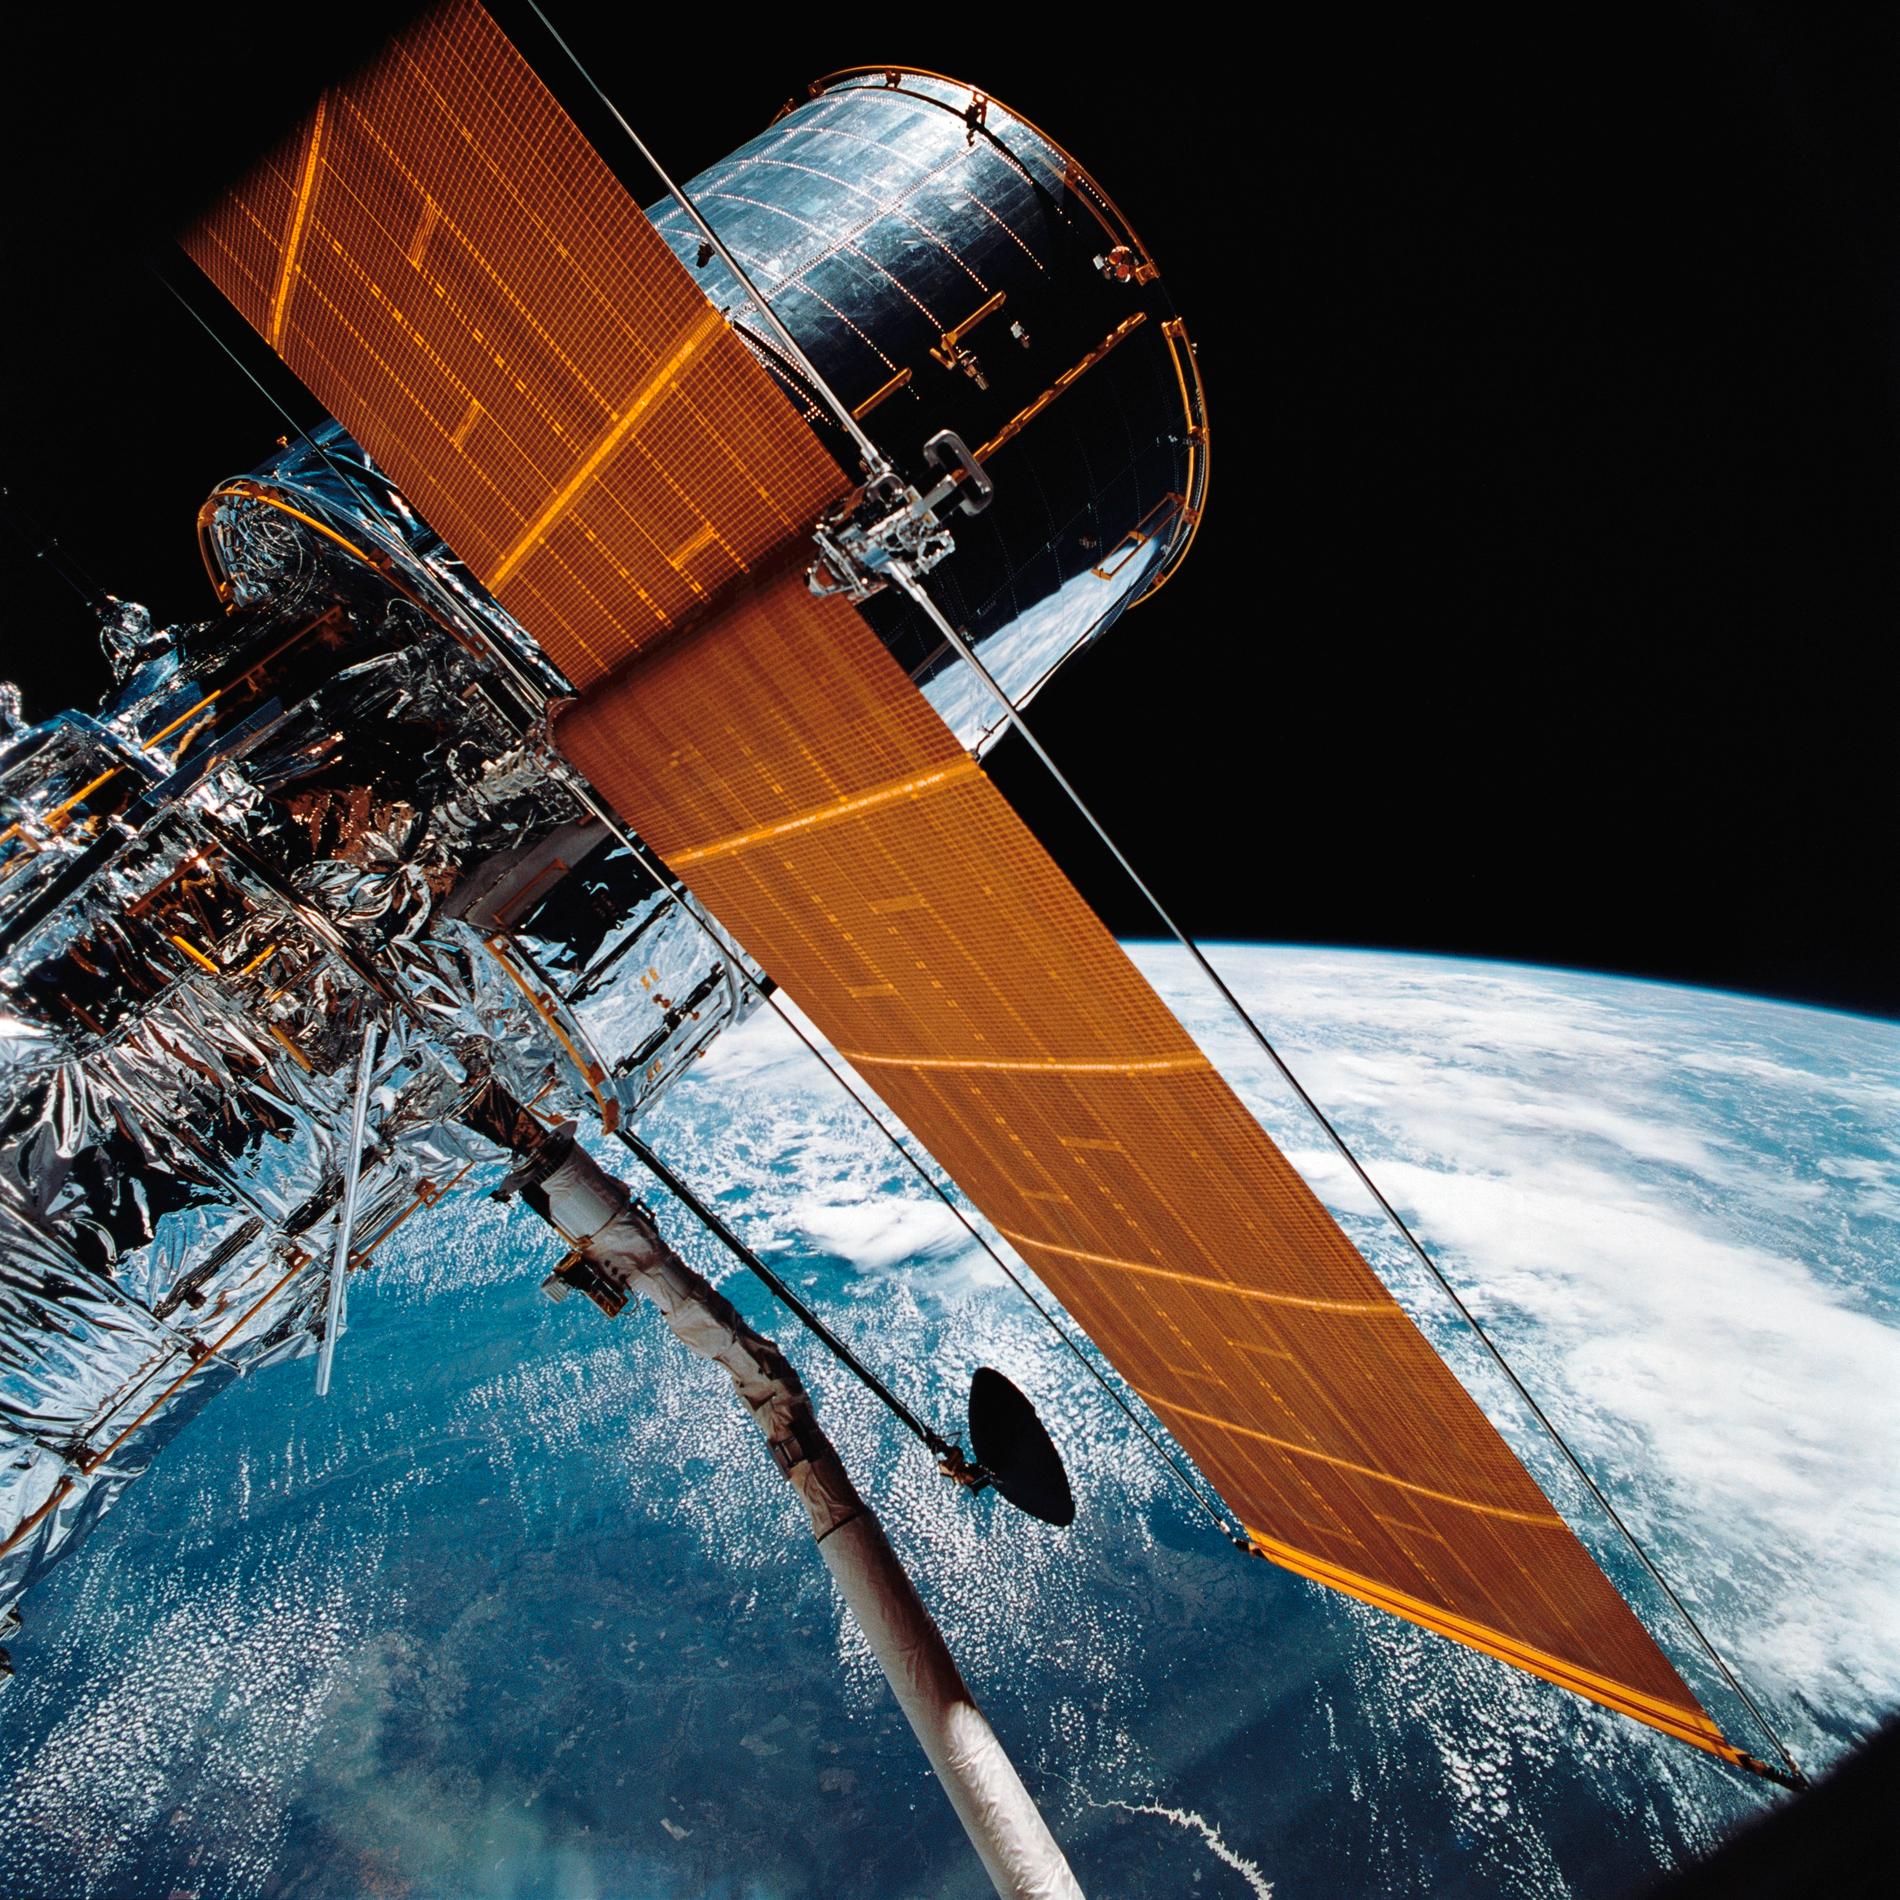 Arkivbild på Hubble från USA:s rymdflygstyrelse Nasa.